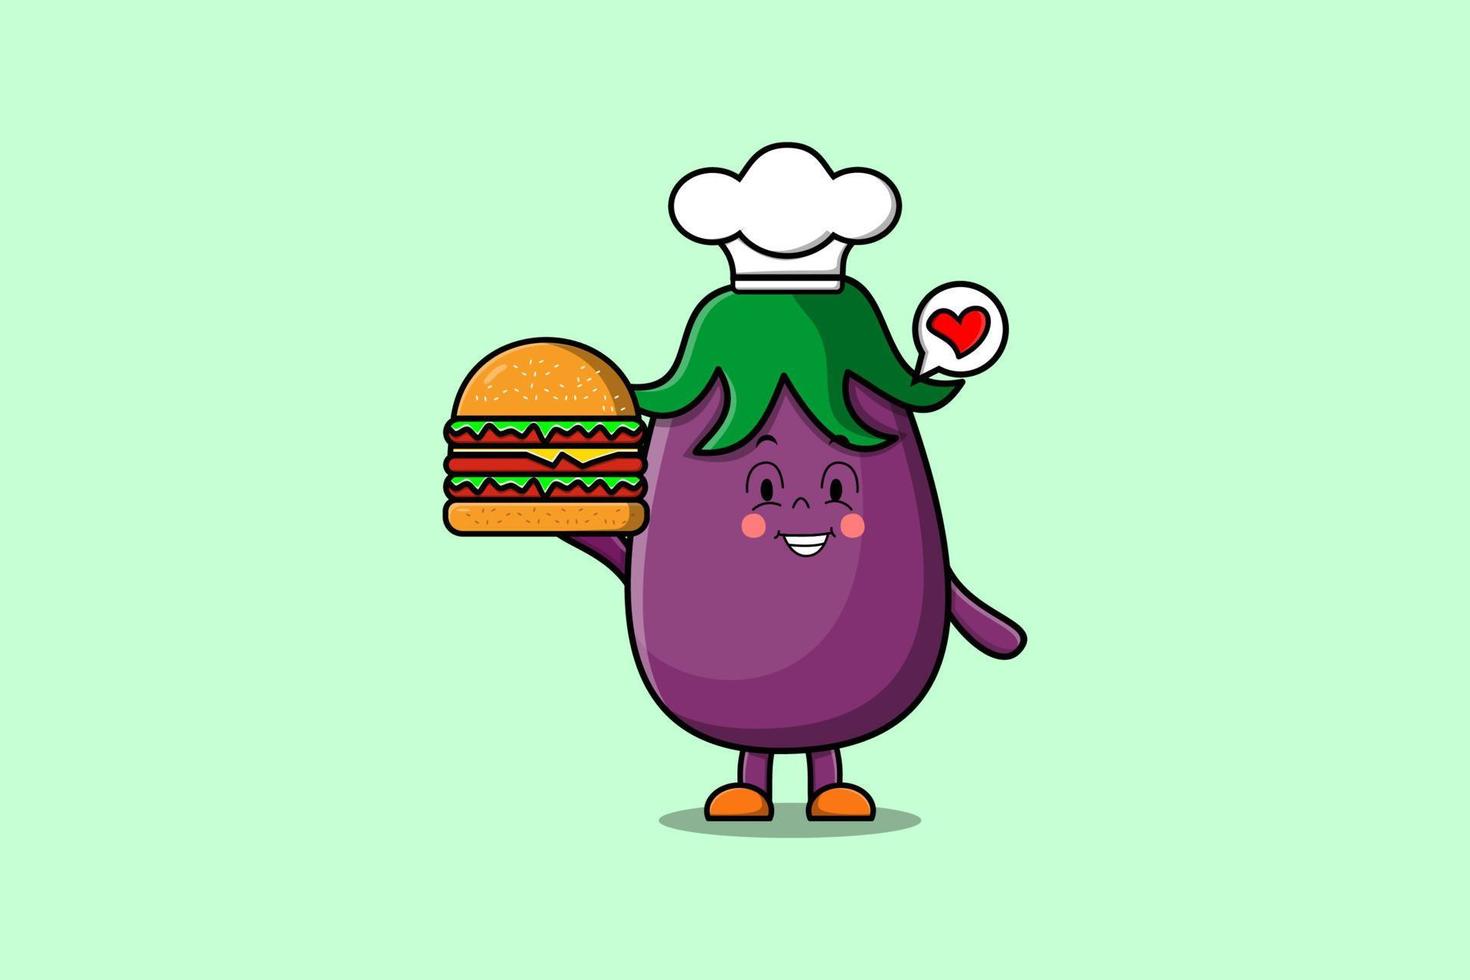 personnage de chef aubergine dessin animé mignon tenir burger vecteur